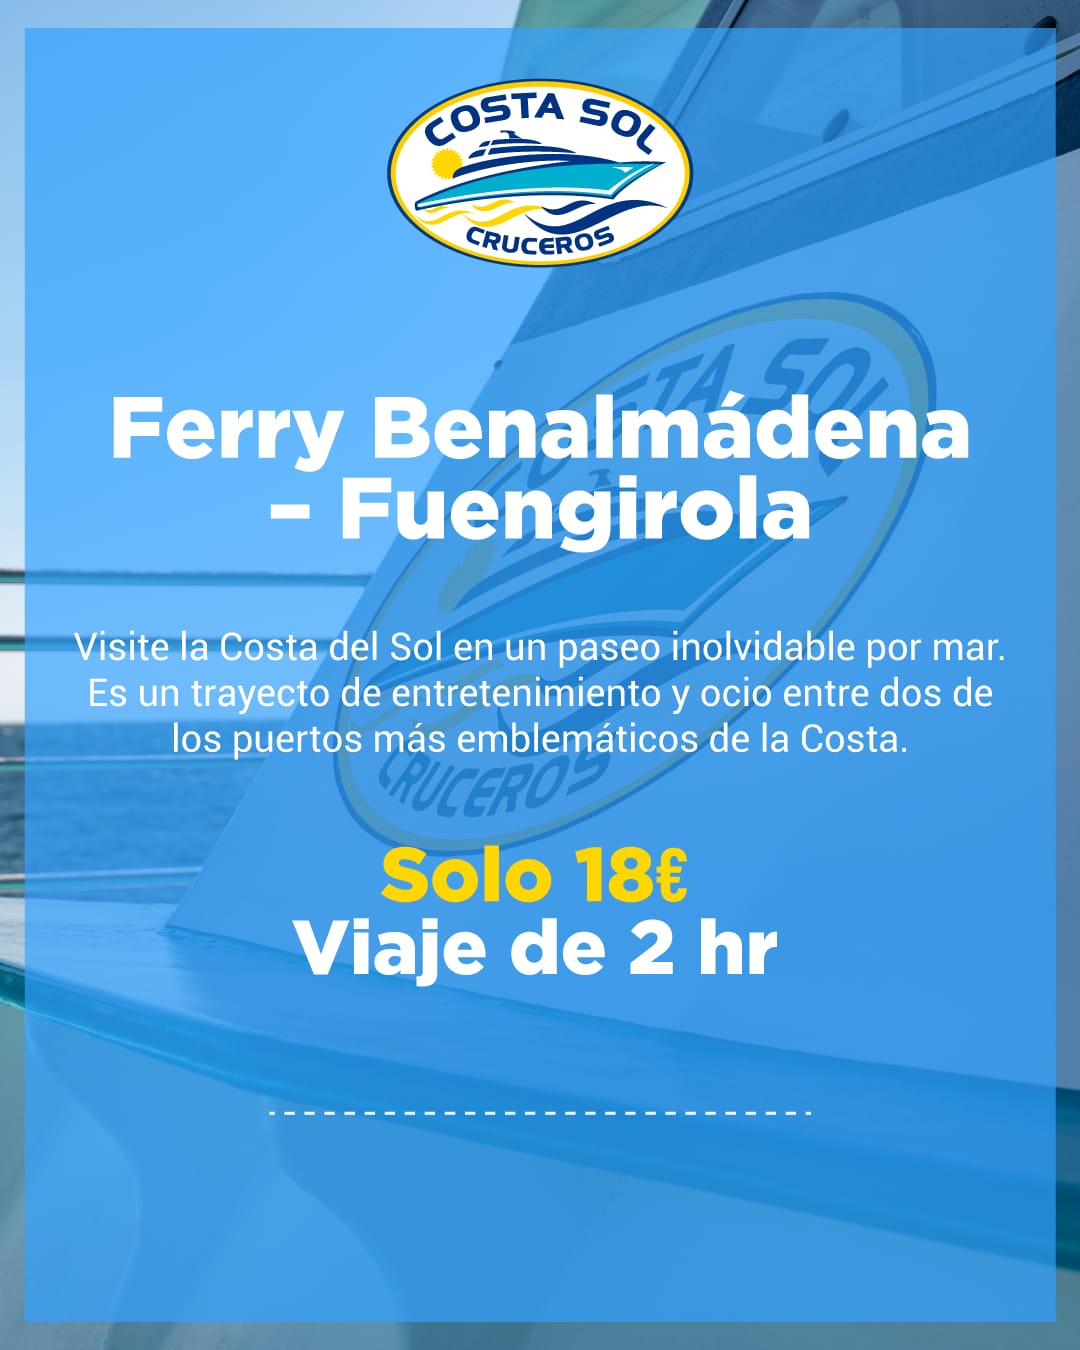 Publicidad Ferry benalmádena-Fuengirola